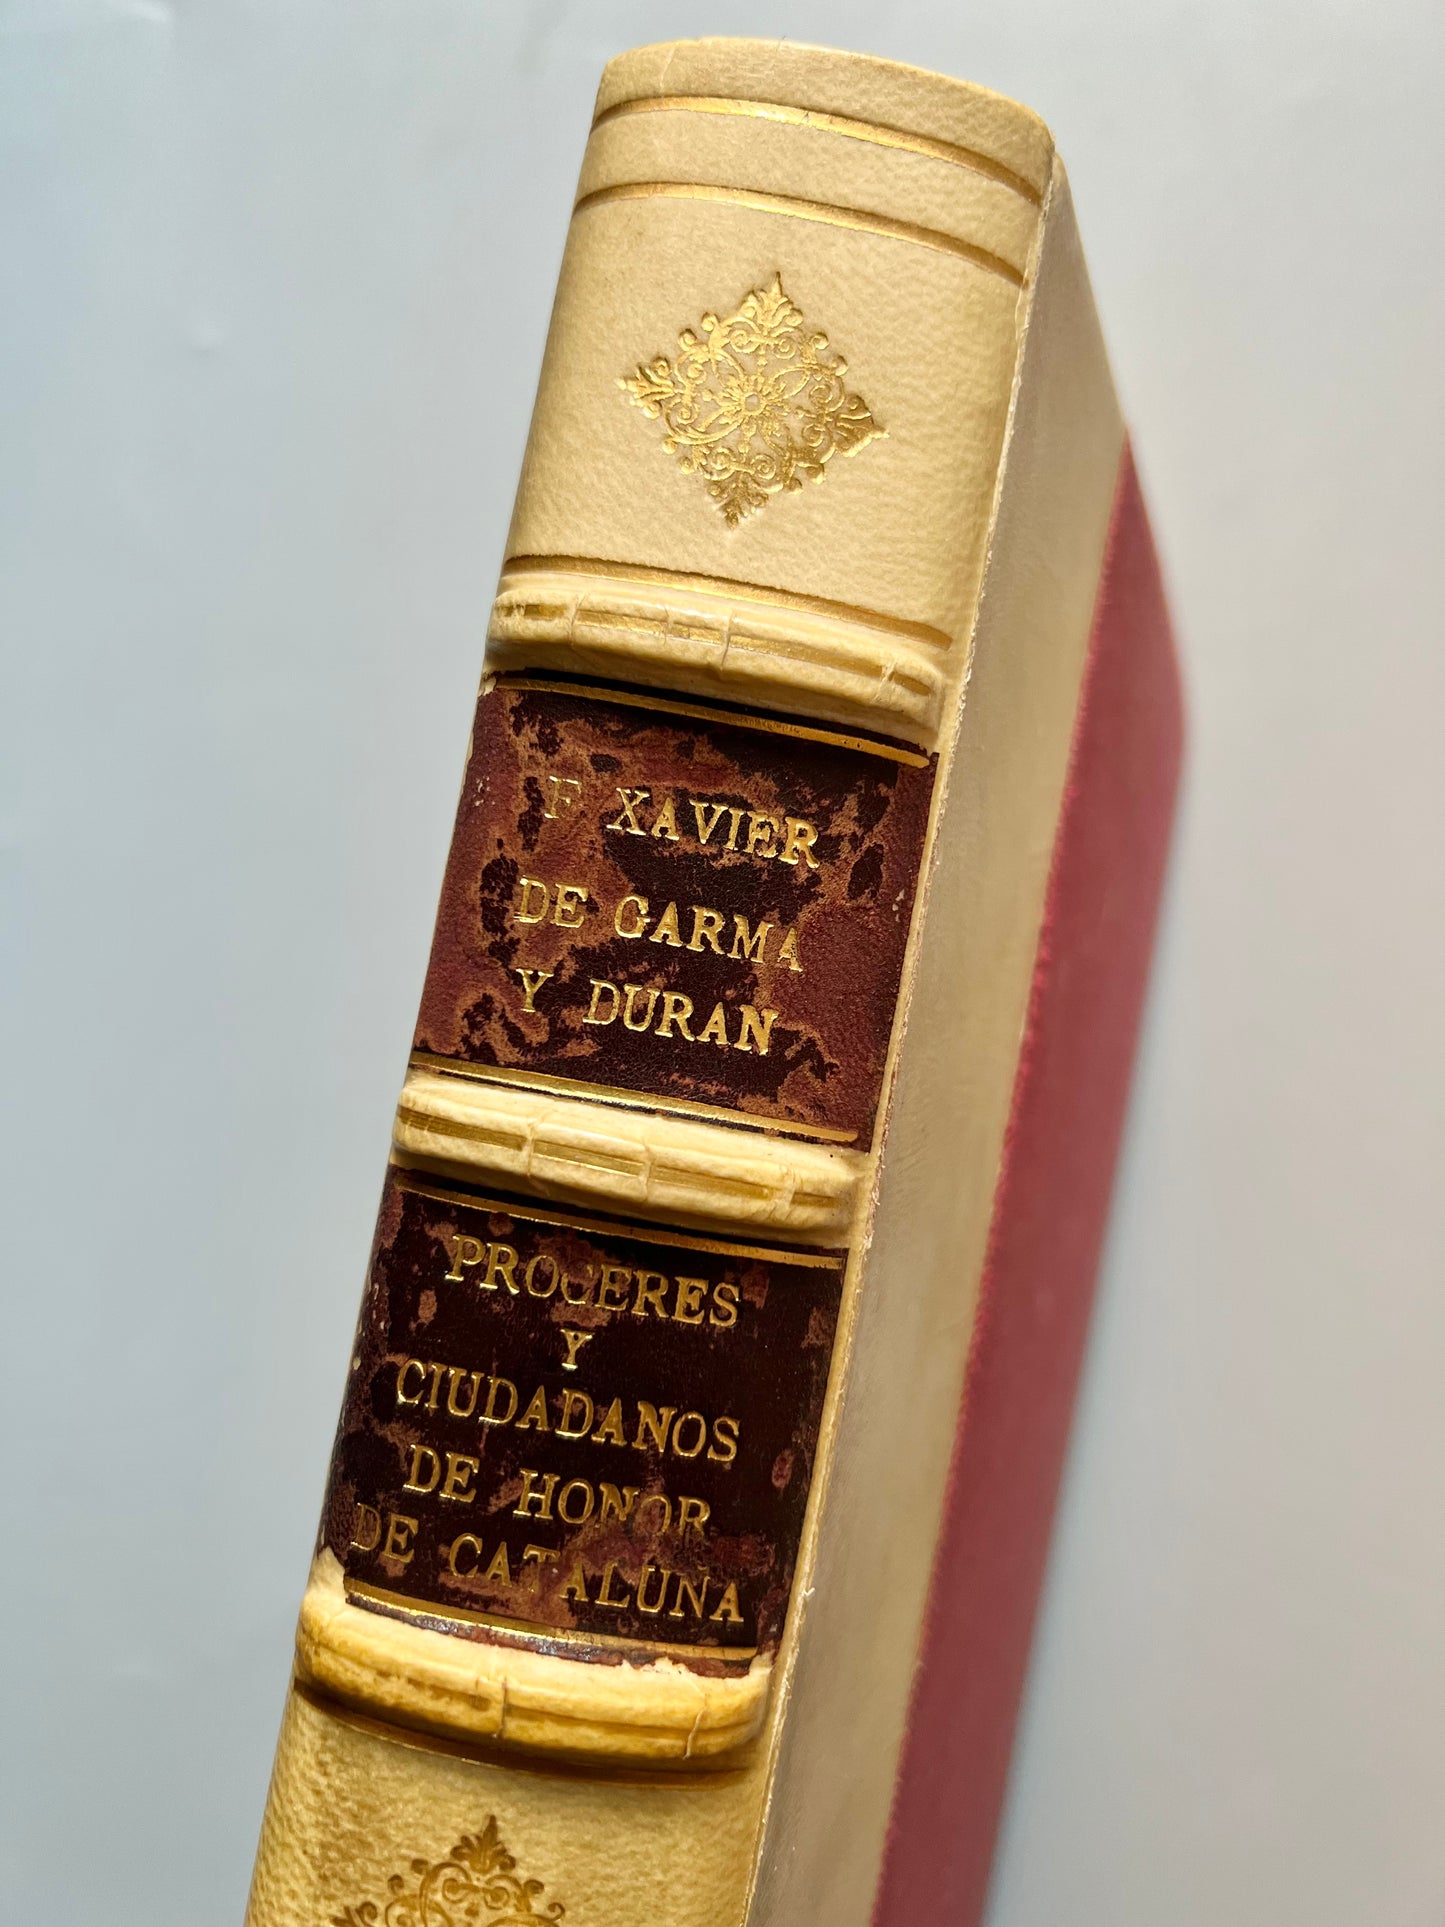 Próceres y ciudadanos de honor del principado de Cataluña, Francisco Xavier de Garma y Durán (ejemplar nº5) - Stemmata, 1957